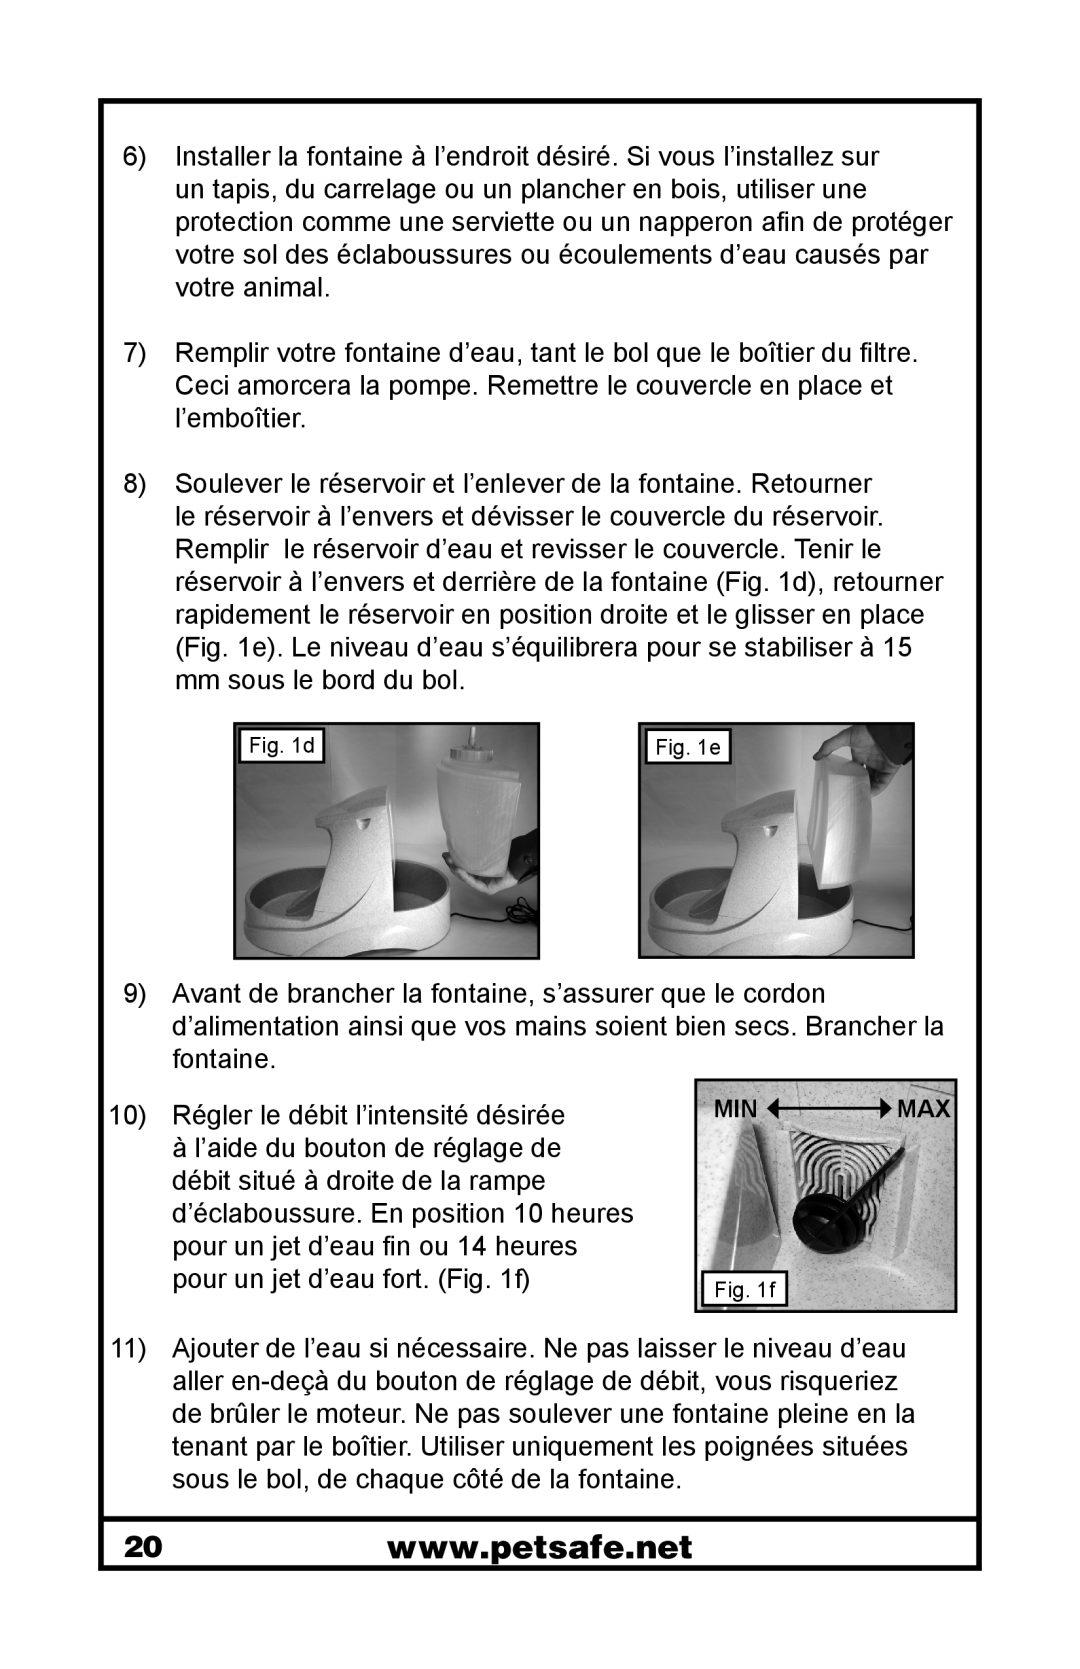 Petsafe 400-1255-19 manuel dutilisation Remplir votre fontaine d’eau, tant le bol que le boîtier du filtre 